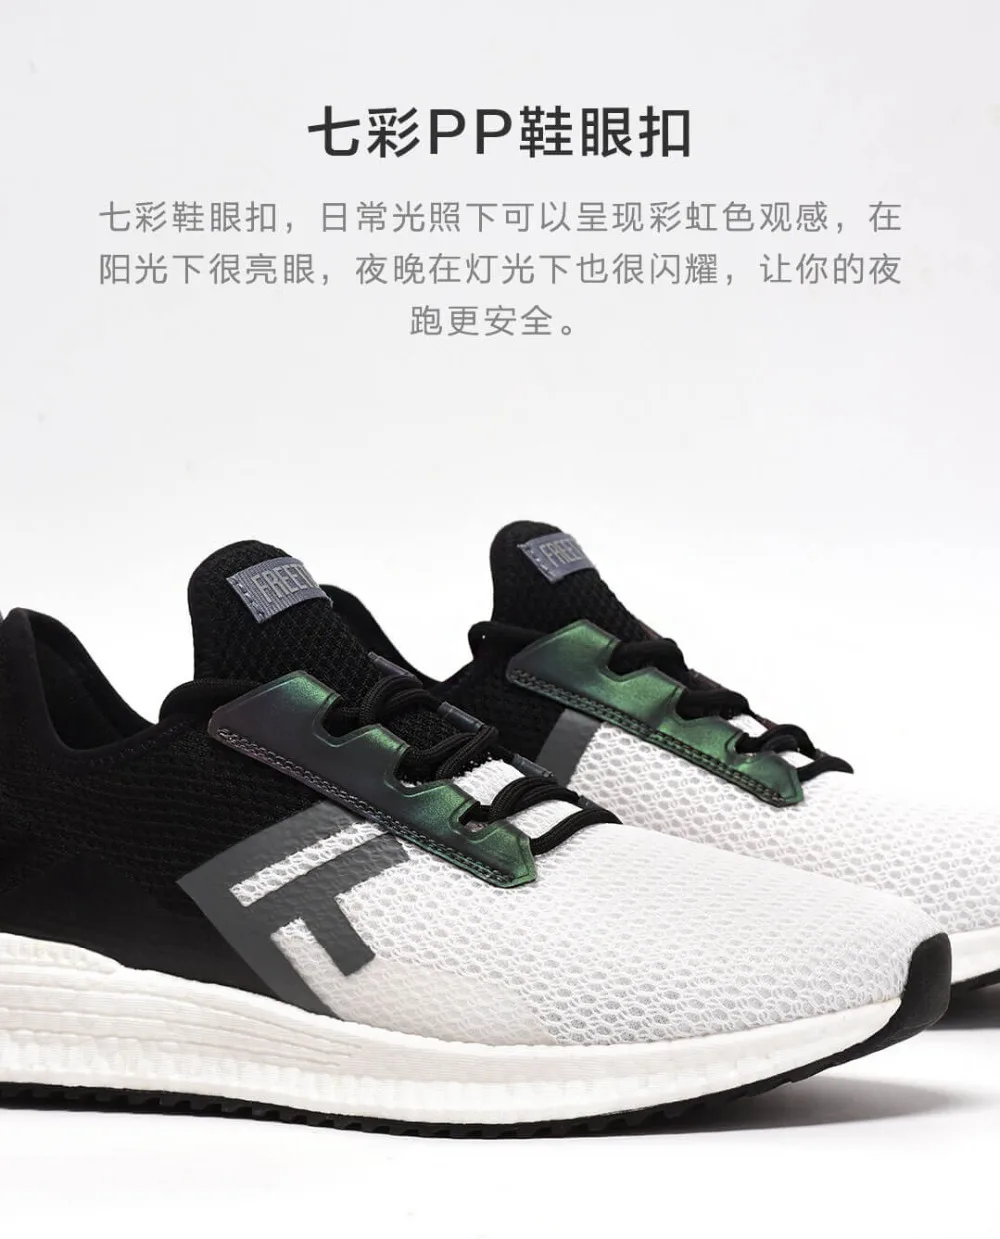 Xiaomi FREETIE спортивная легкая обувь Вентиляция Упругие вязаная обувь дышащий освежающий город бег кроссовки для человека H20